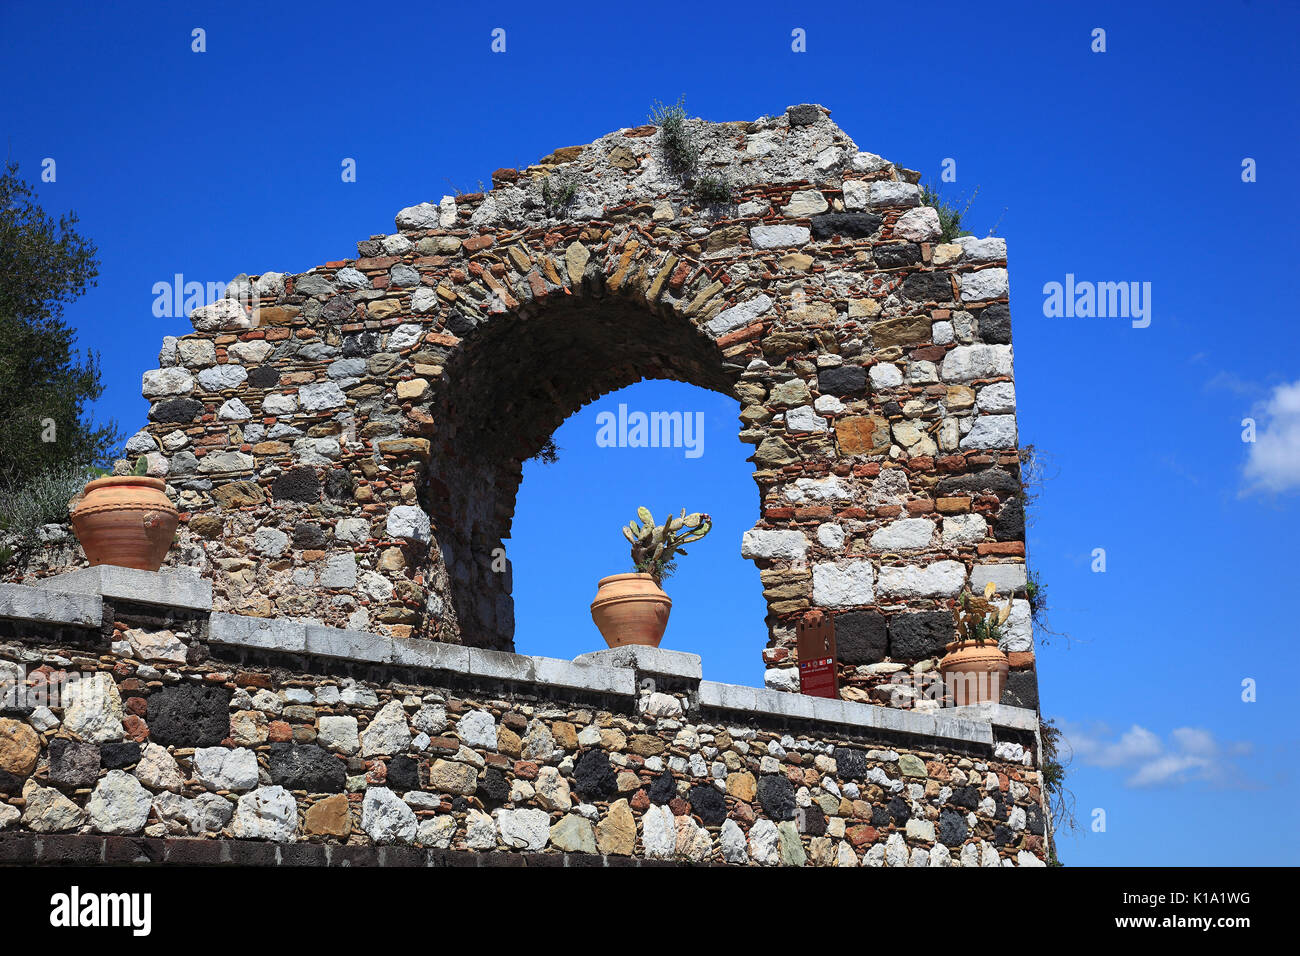 La Sicile, arche en pierre et cactus dans le pot Banque D'Images